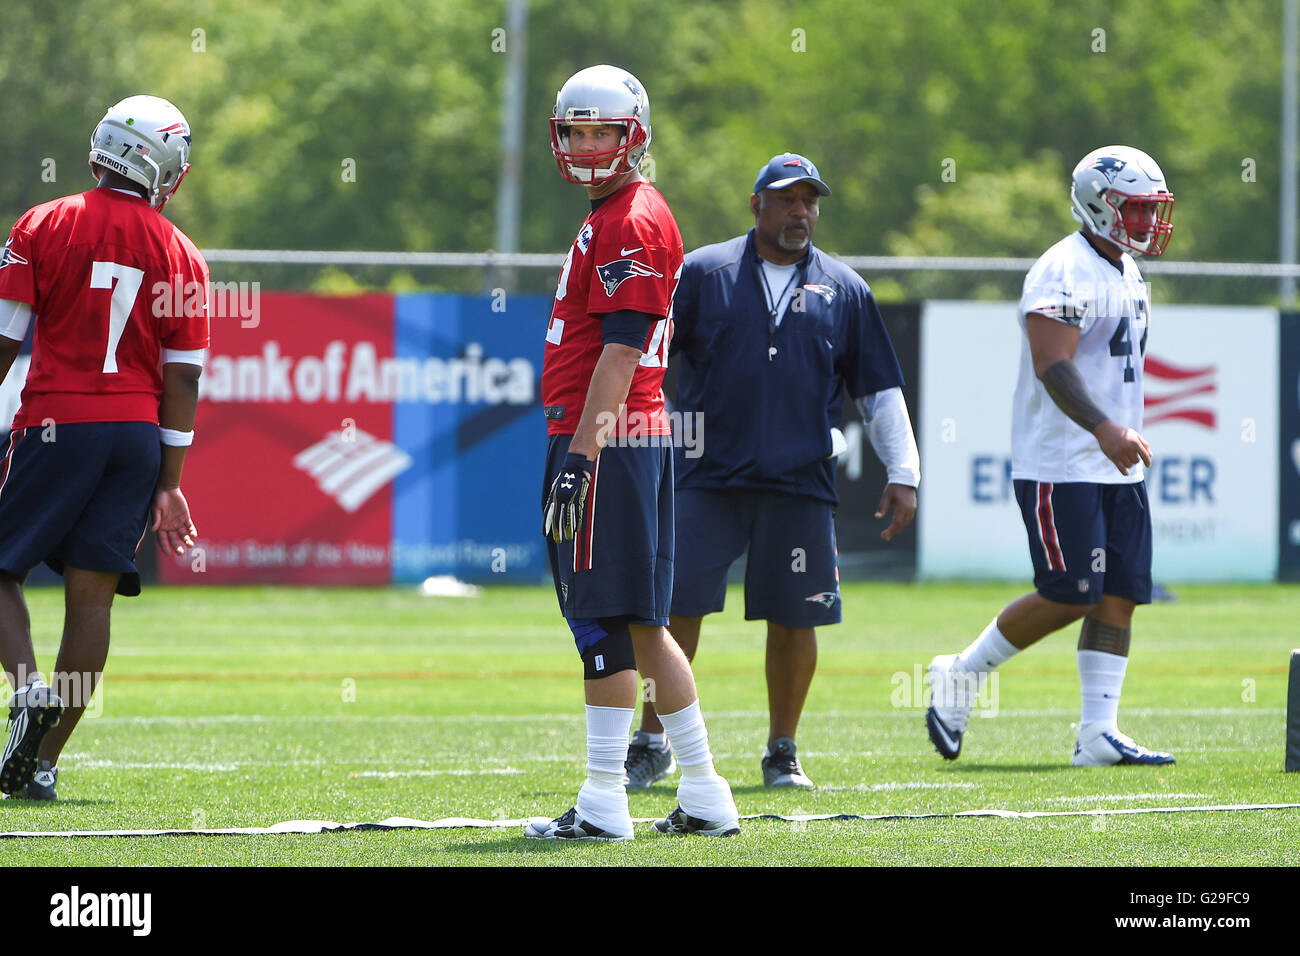 Jueves 26 de mayo de 2016: New England Patriots quarterback Tom Brady (12)  participa en el New England Patriots, equipo organizado actividades  celebradas en el campo de práctica en Gillette Stadium, de